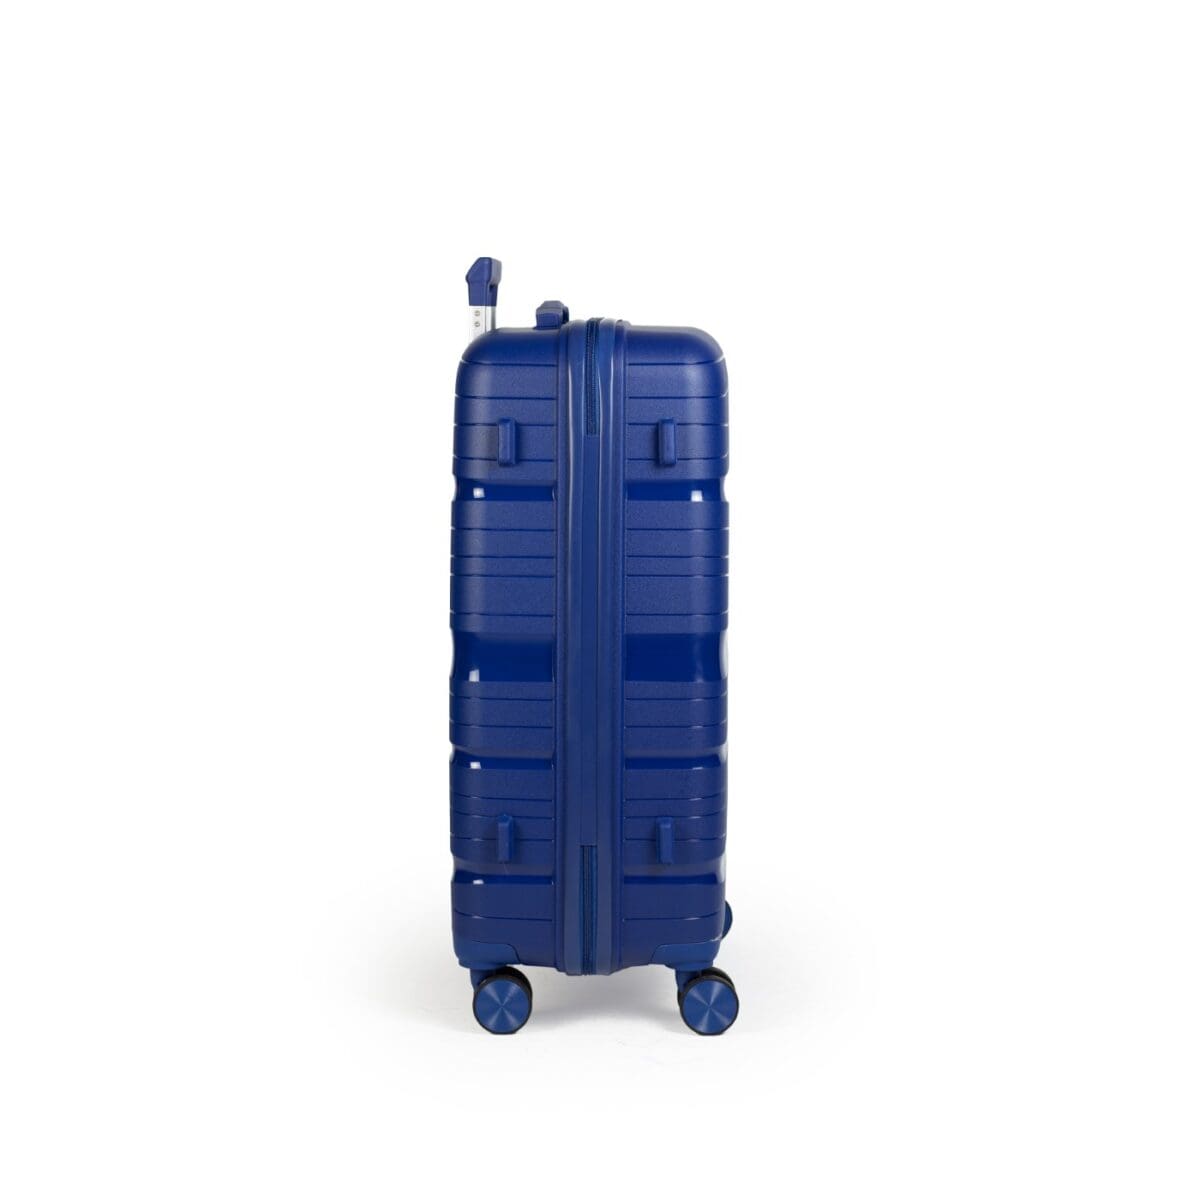 Δεξιά πλευρά βαλίτσας με πατόκουμπα σε μπλε χρώμα